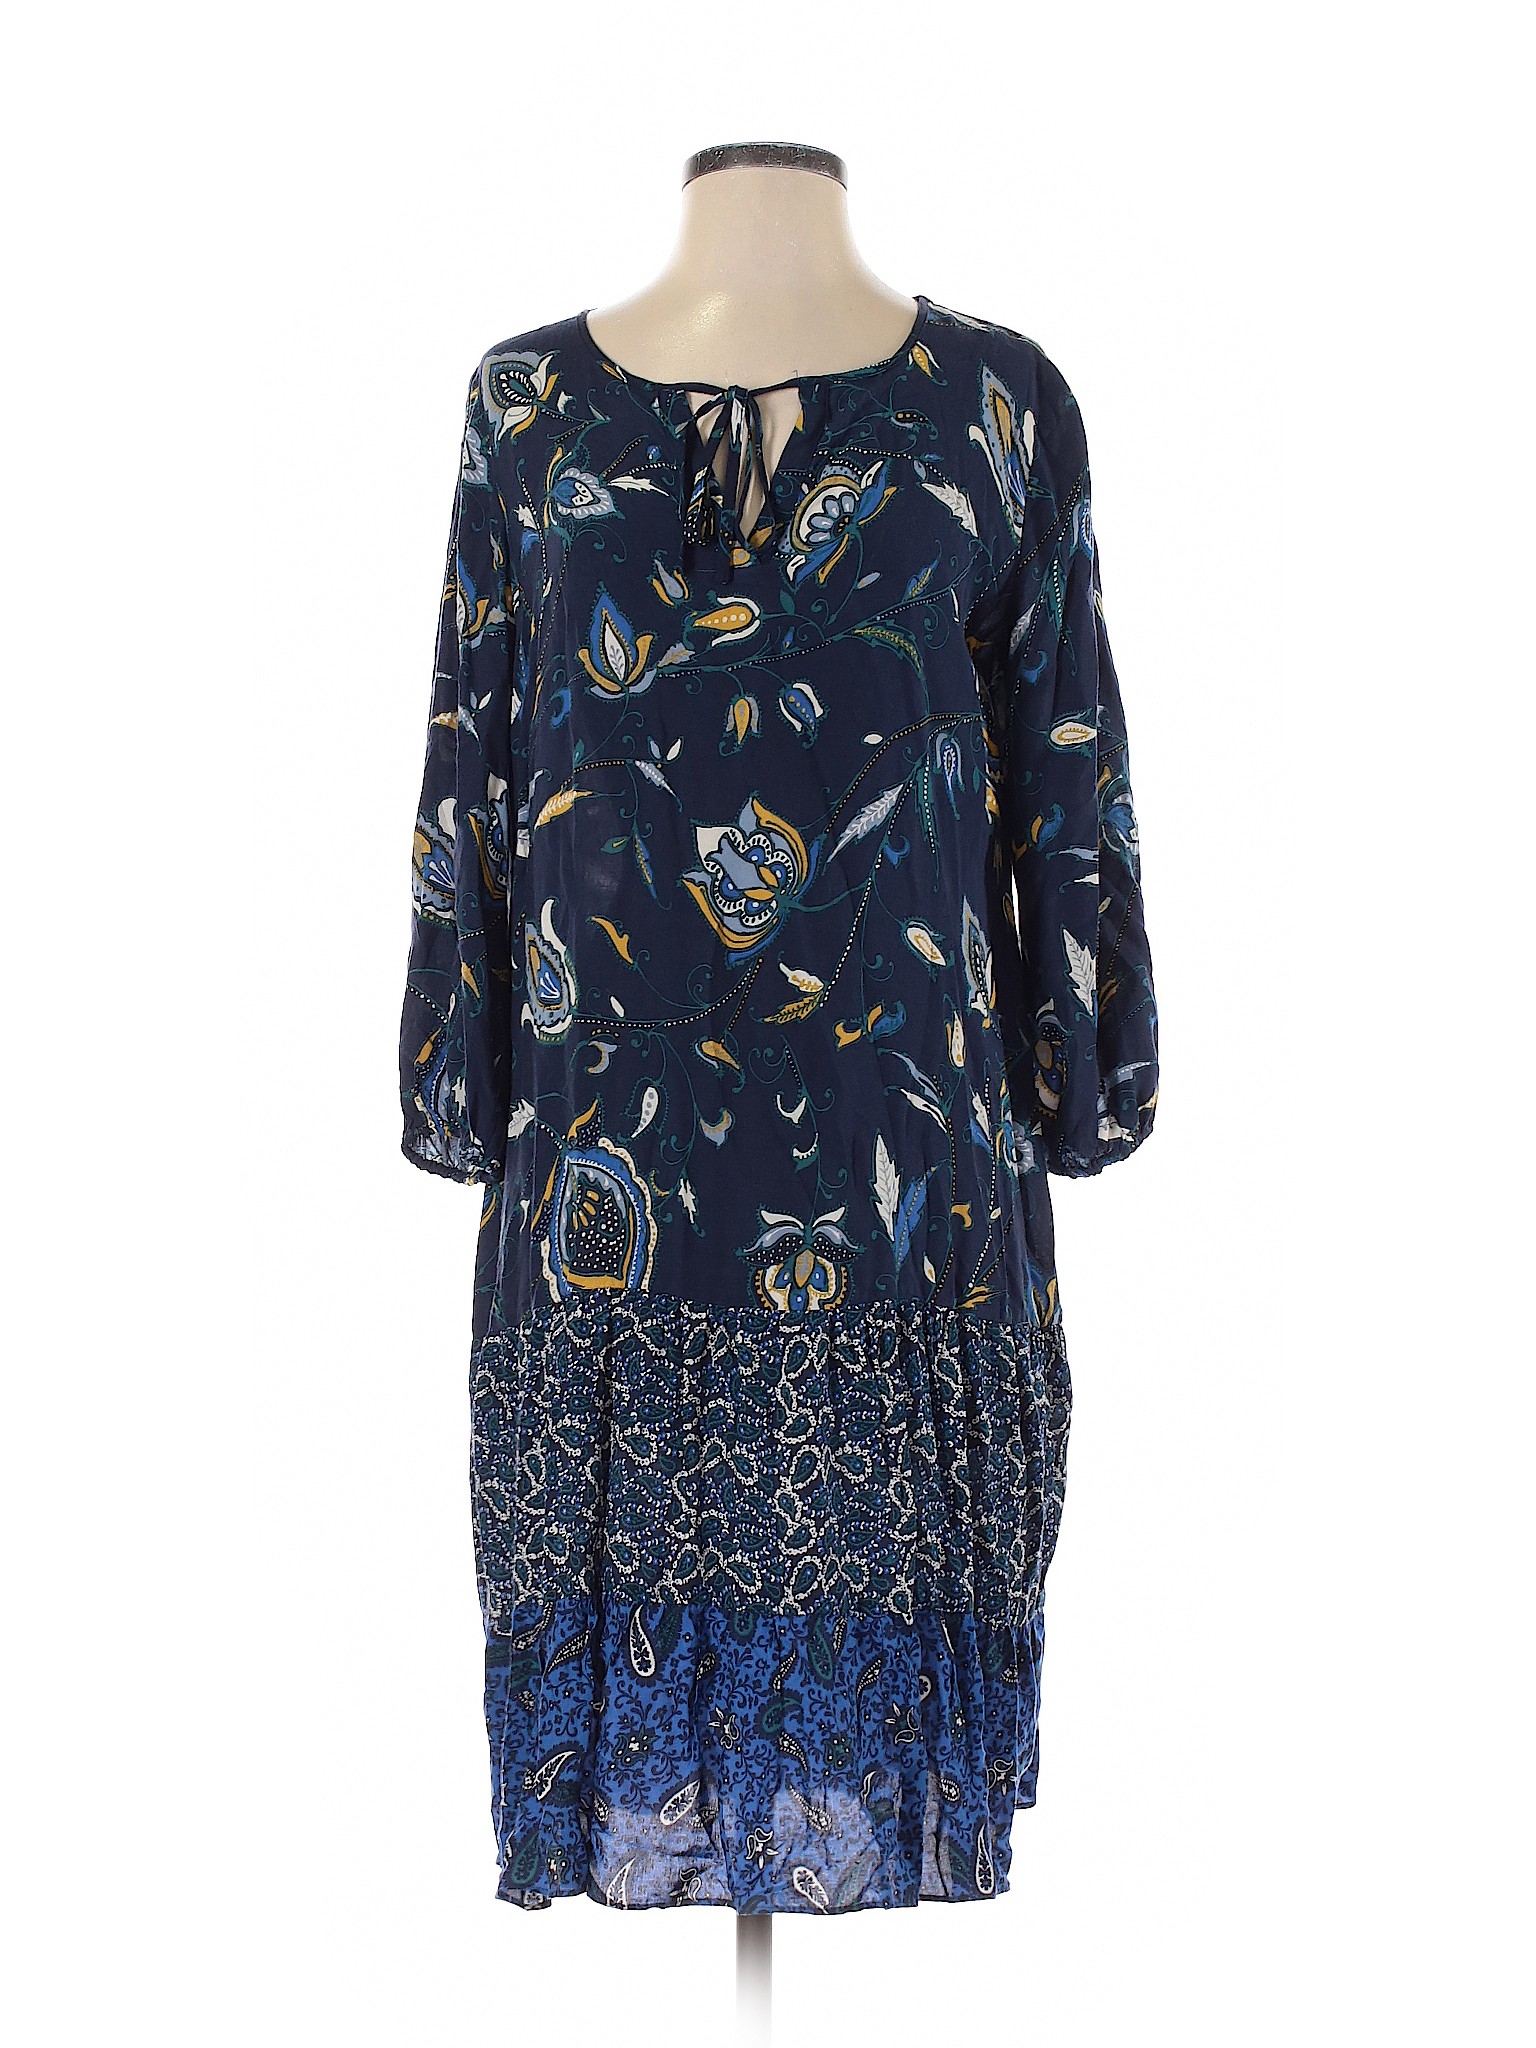 Westport 1962 Women Blue Casual Dress S | eBay